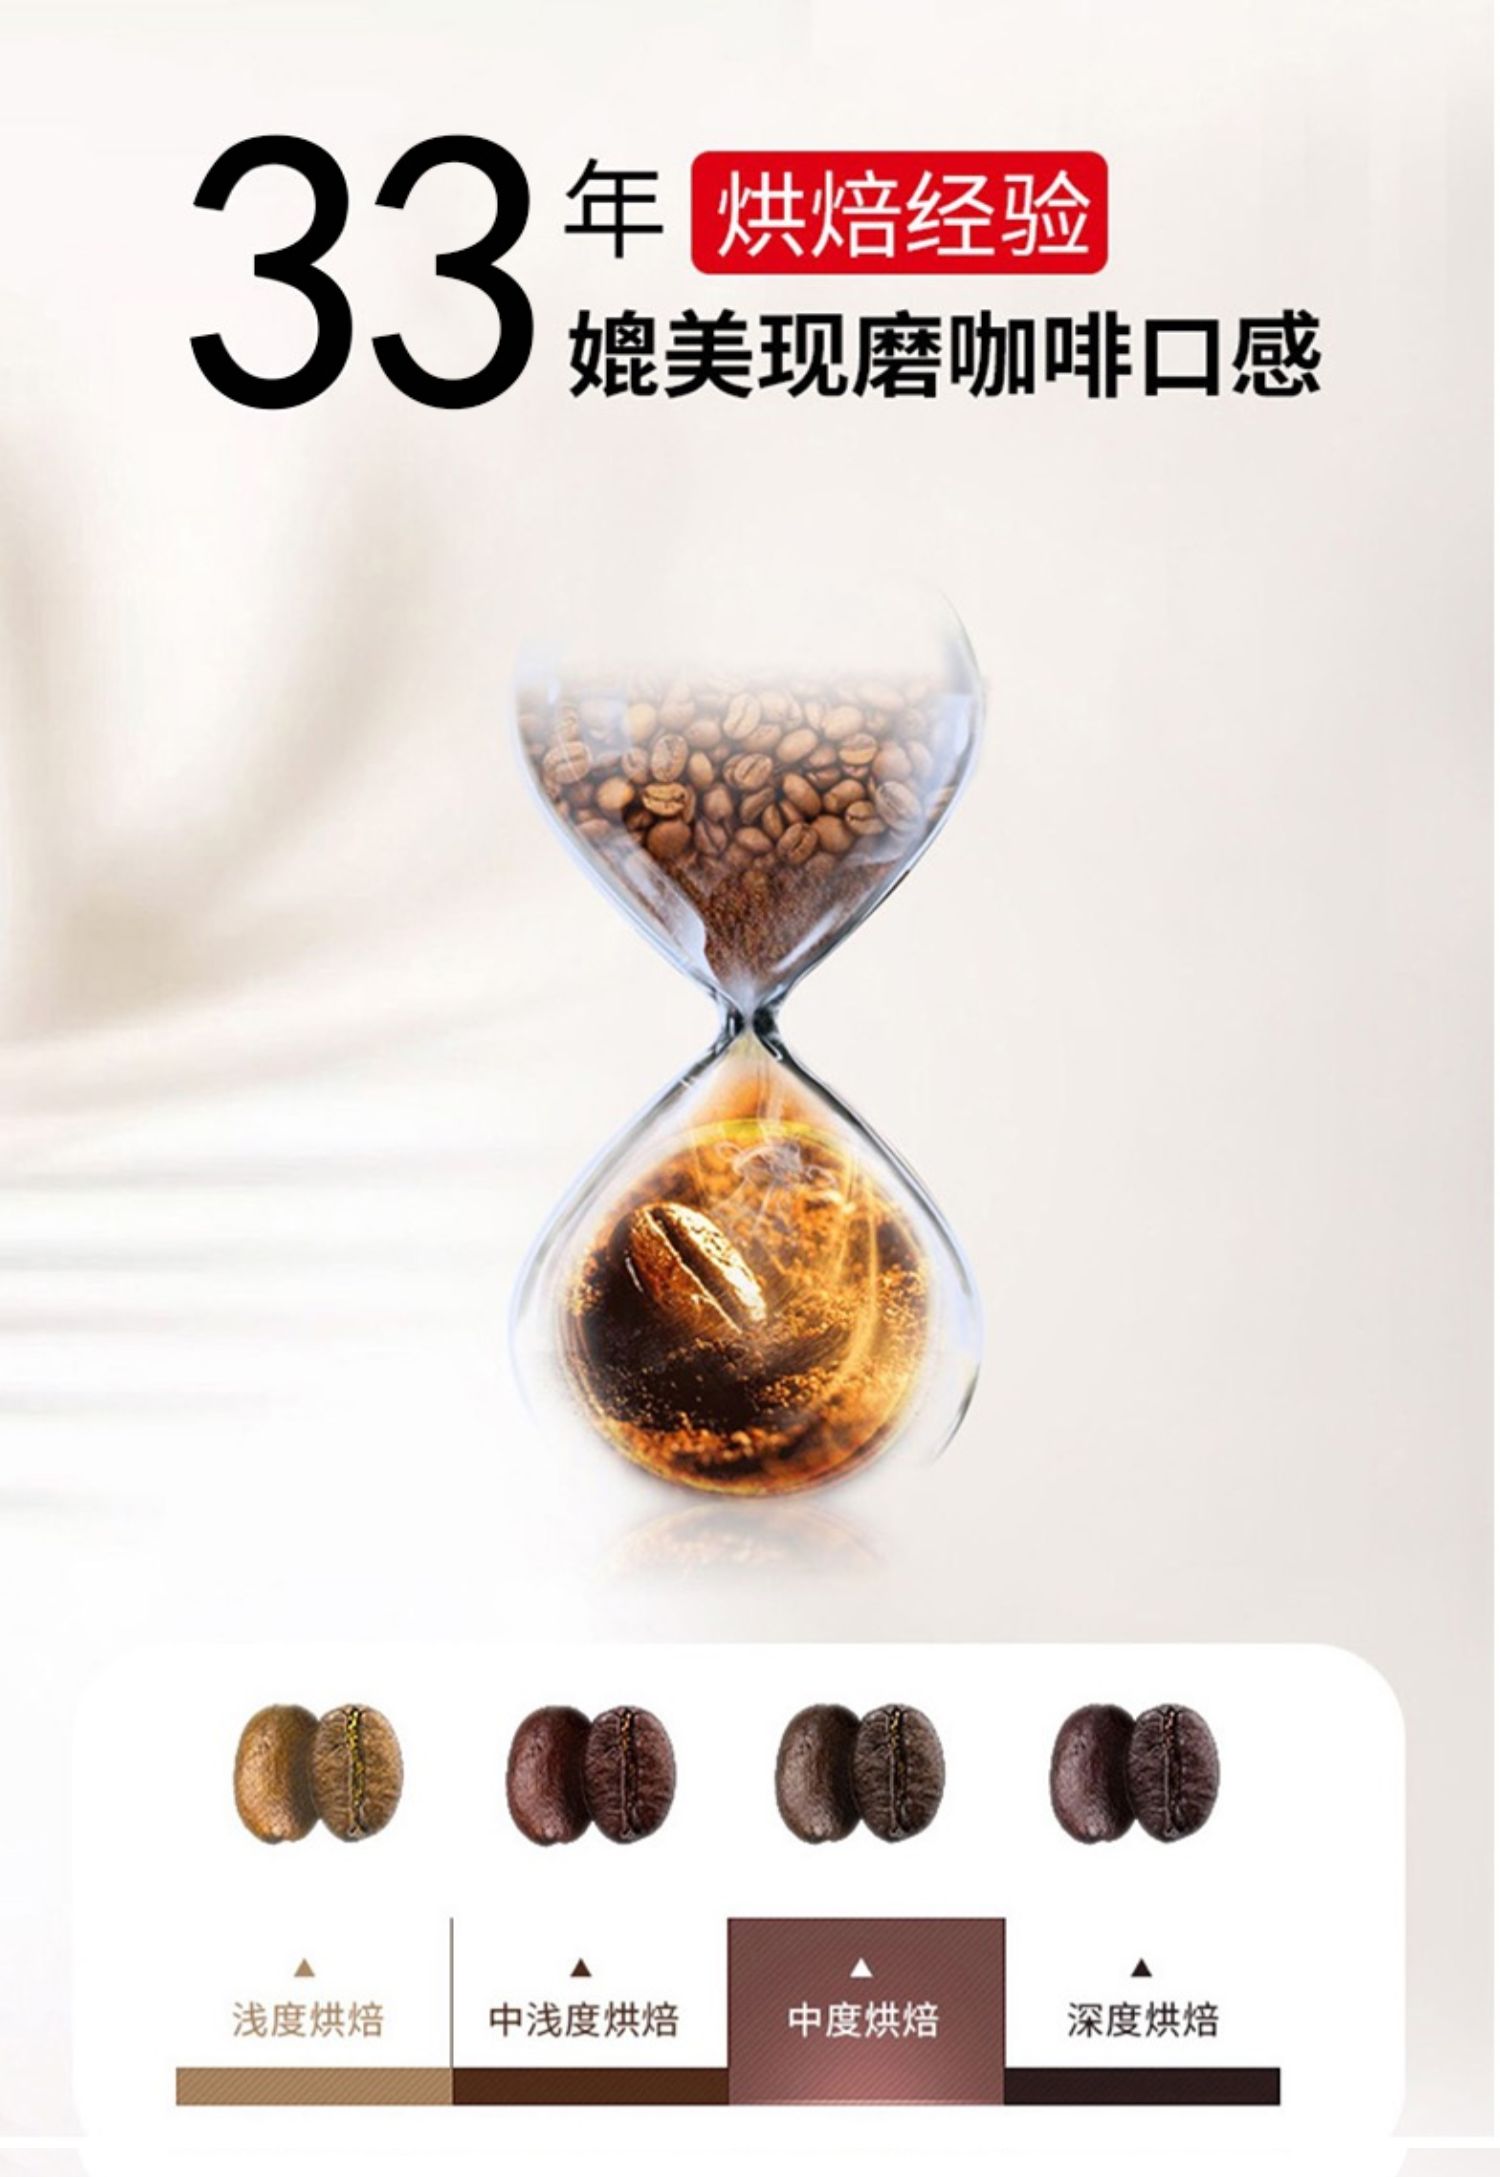 【首单3元】咖啡先生马来西亚速溶咖啡600g